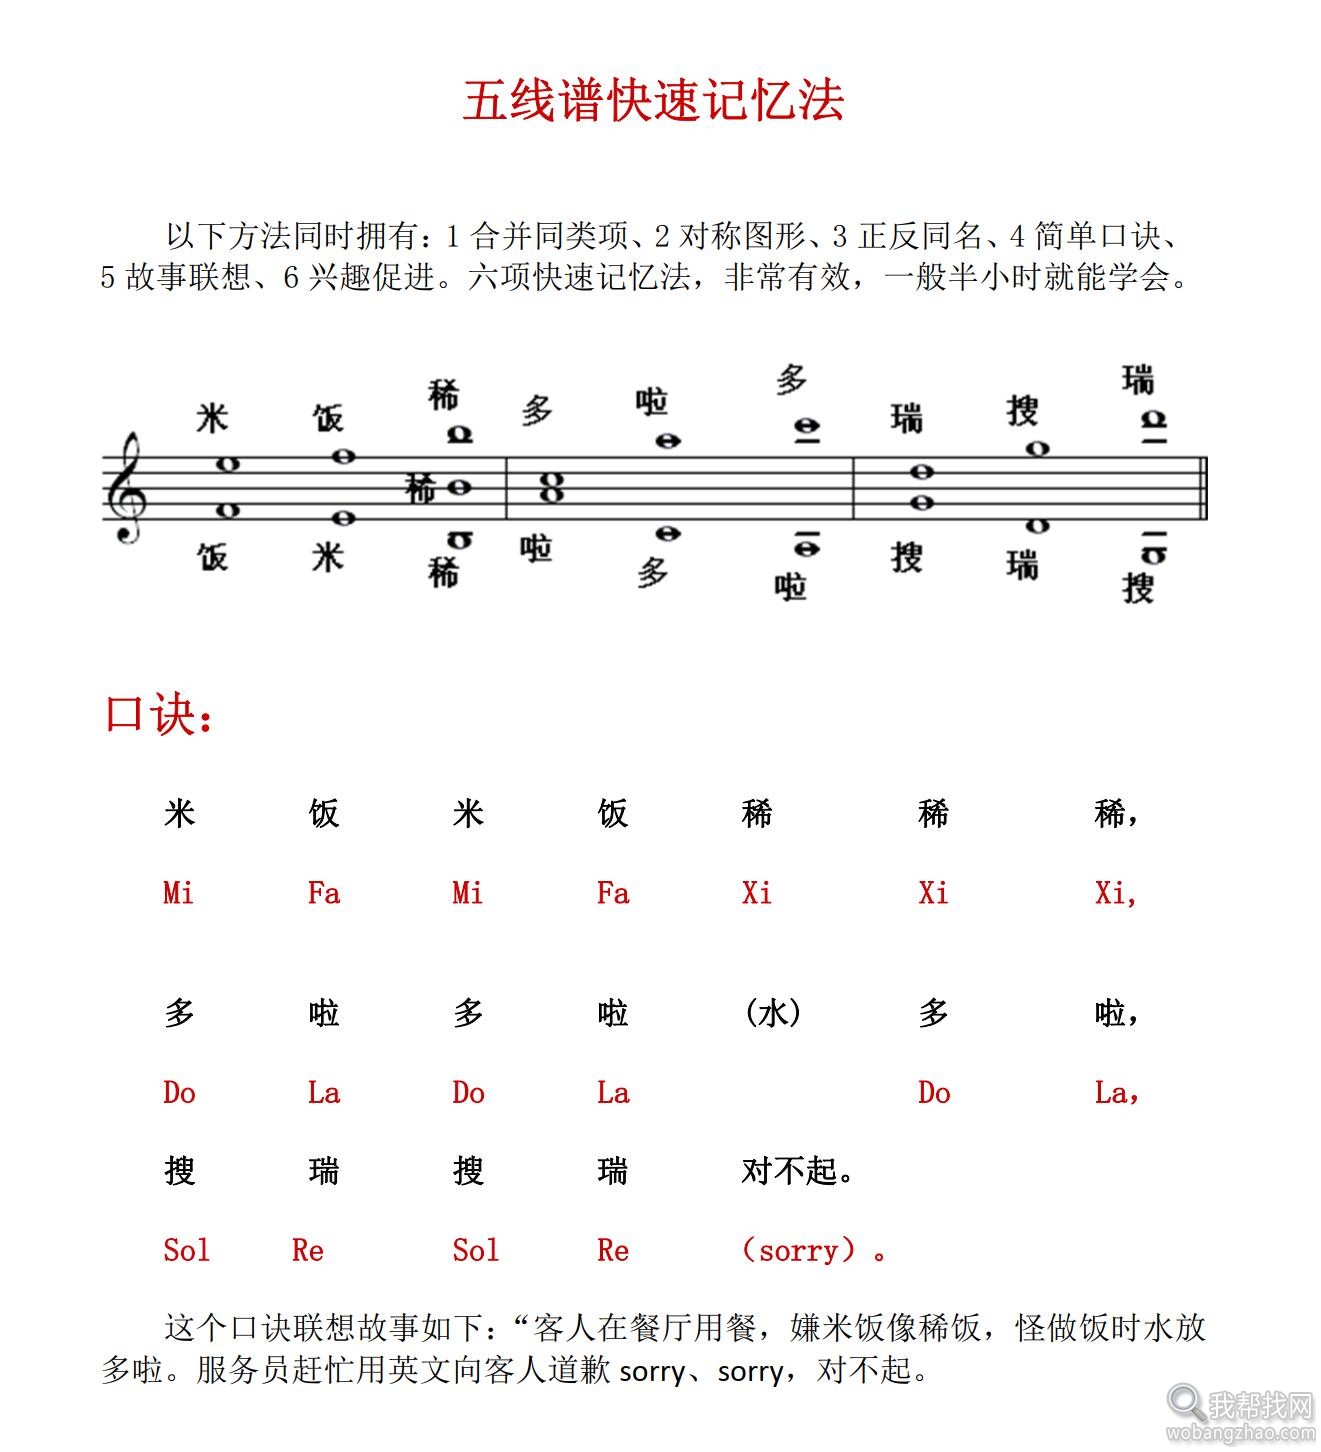 音乐教程 (3).jpg